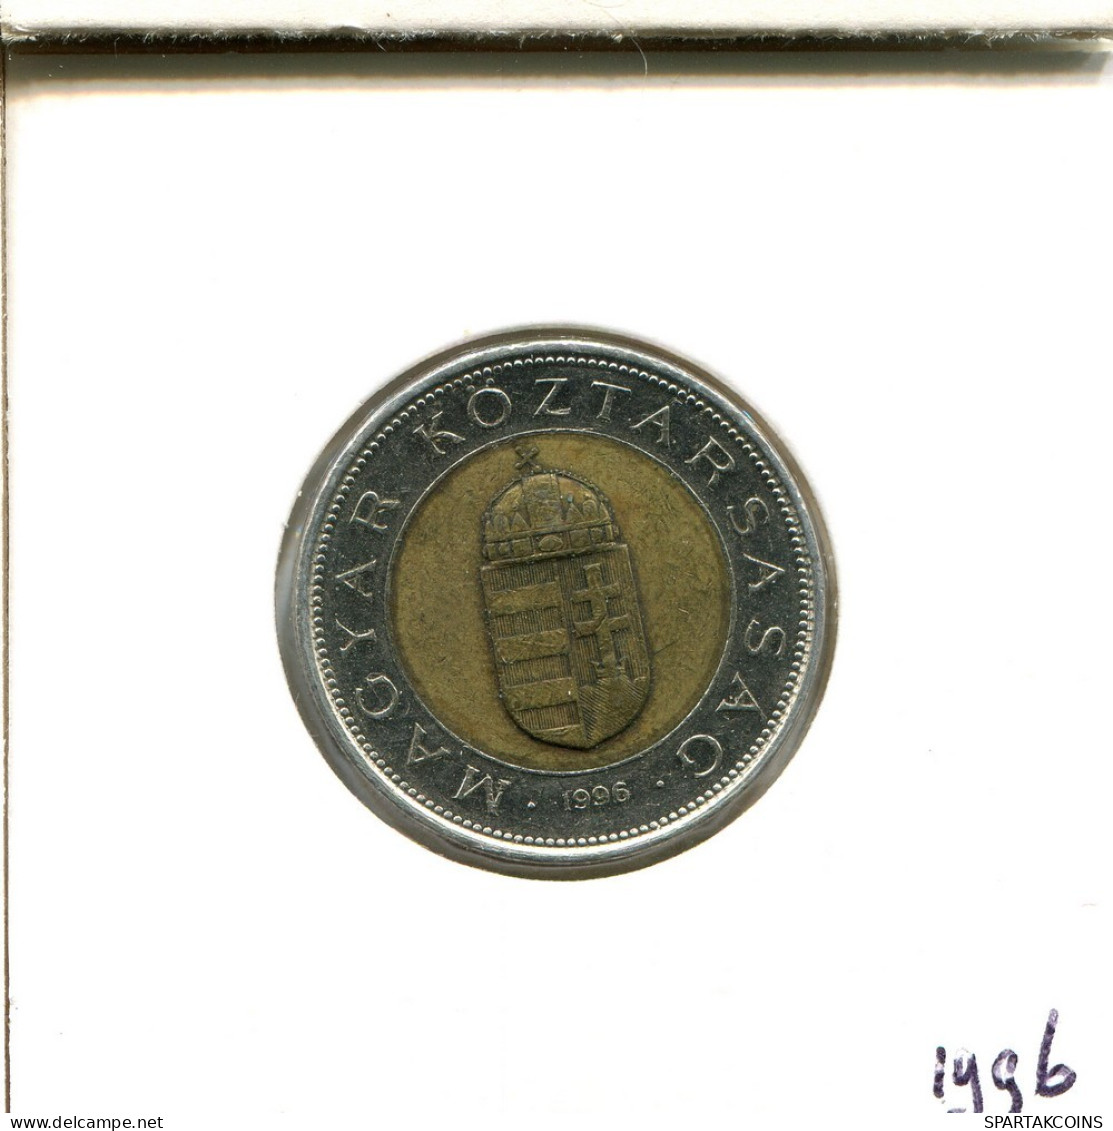 100 FORINT 1996 SIEBENBÜRGEN HUNGARY Münze BIMETALLIC #AS917.D.A - Hongrie